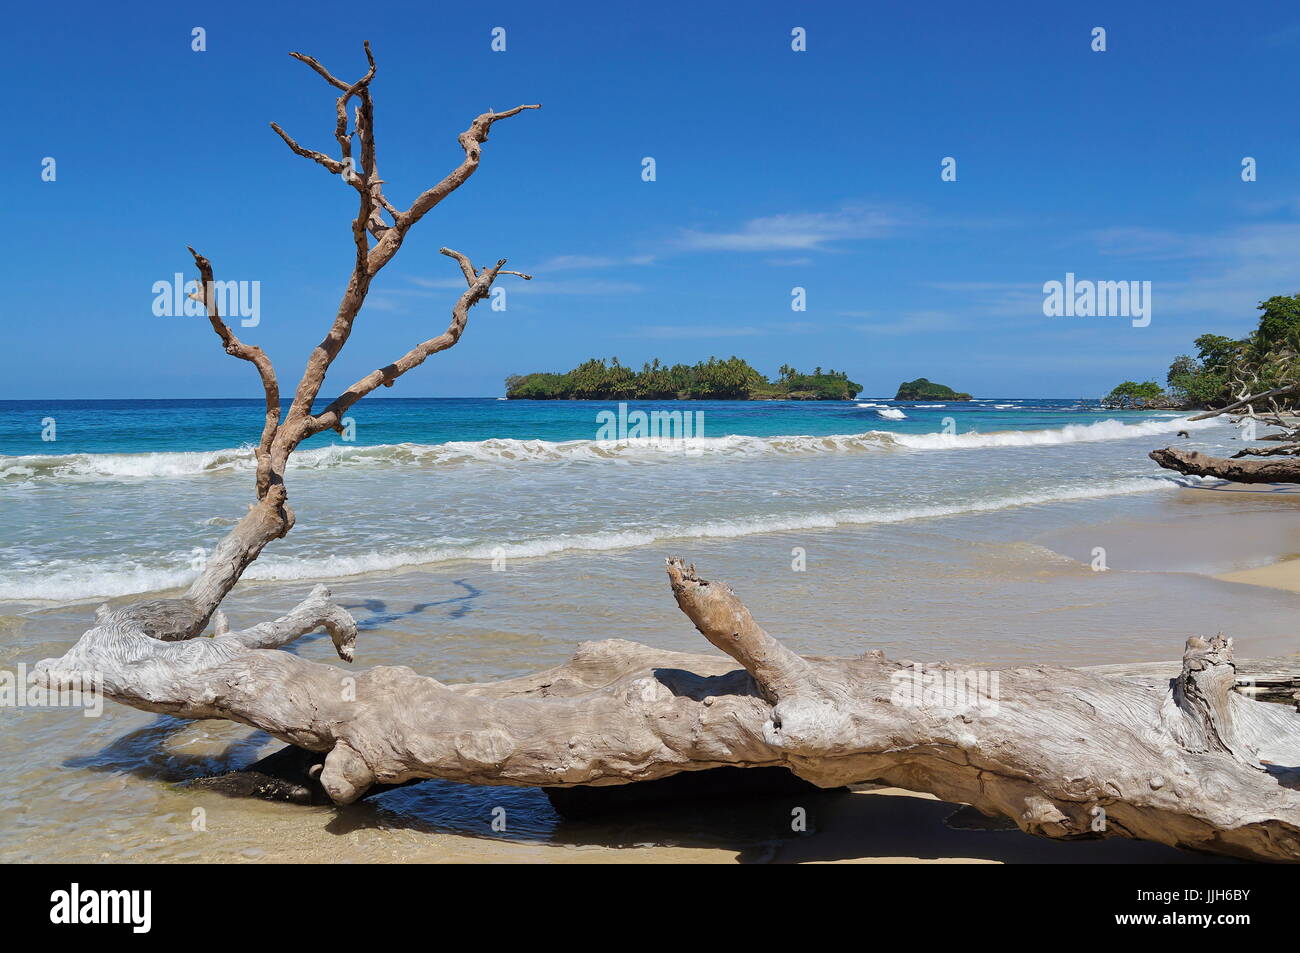 Grandi driftwood tronco di albero su una spiaggia sabbiosa con isola tropicale in background e il mare dei Caraibi, Bastimentos, Bocas del Toro, Panama Foto Stock